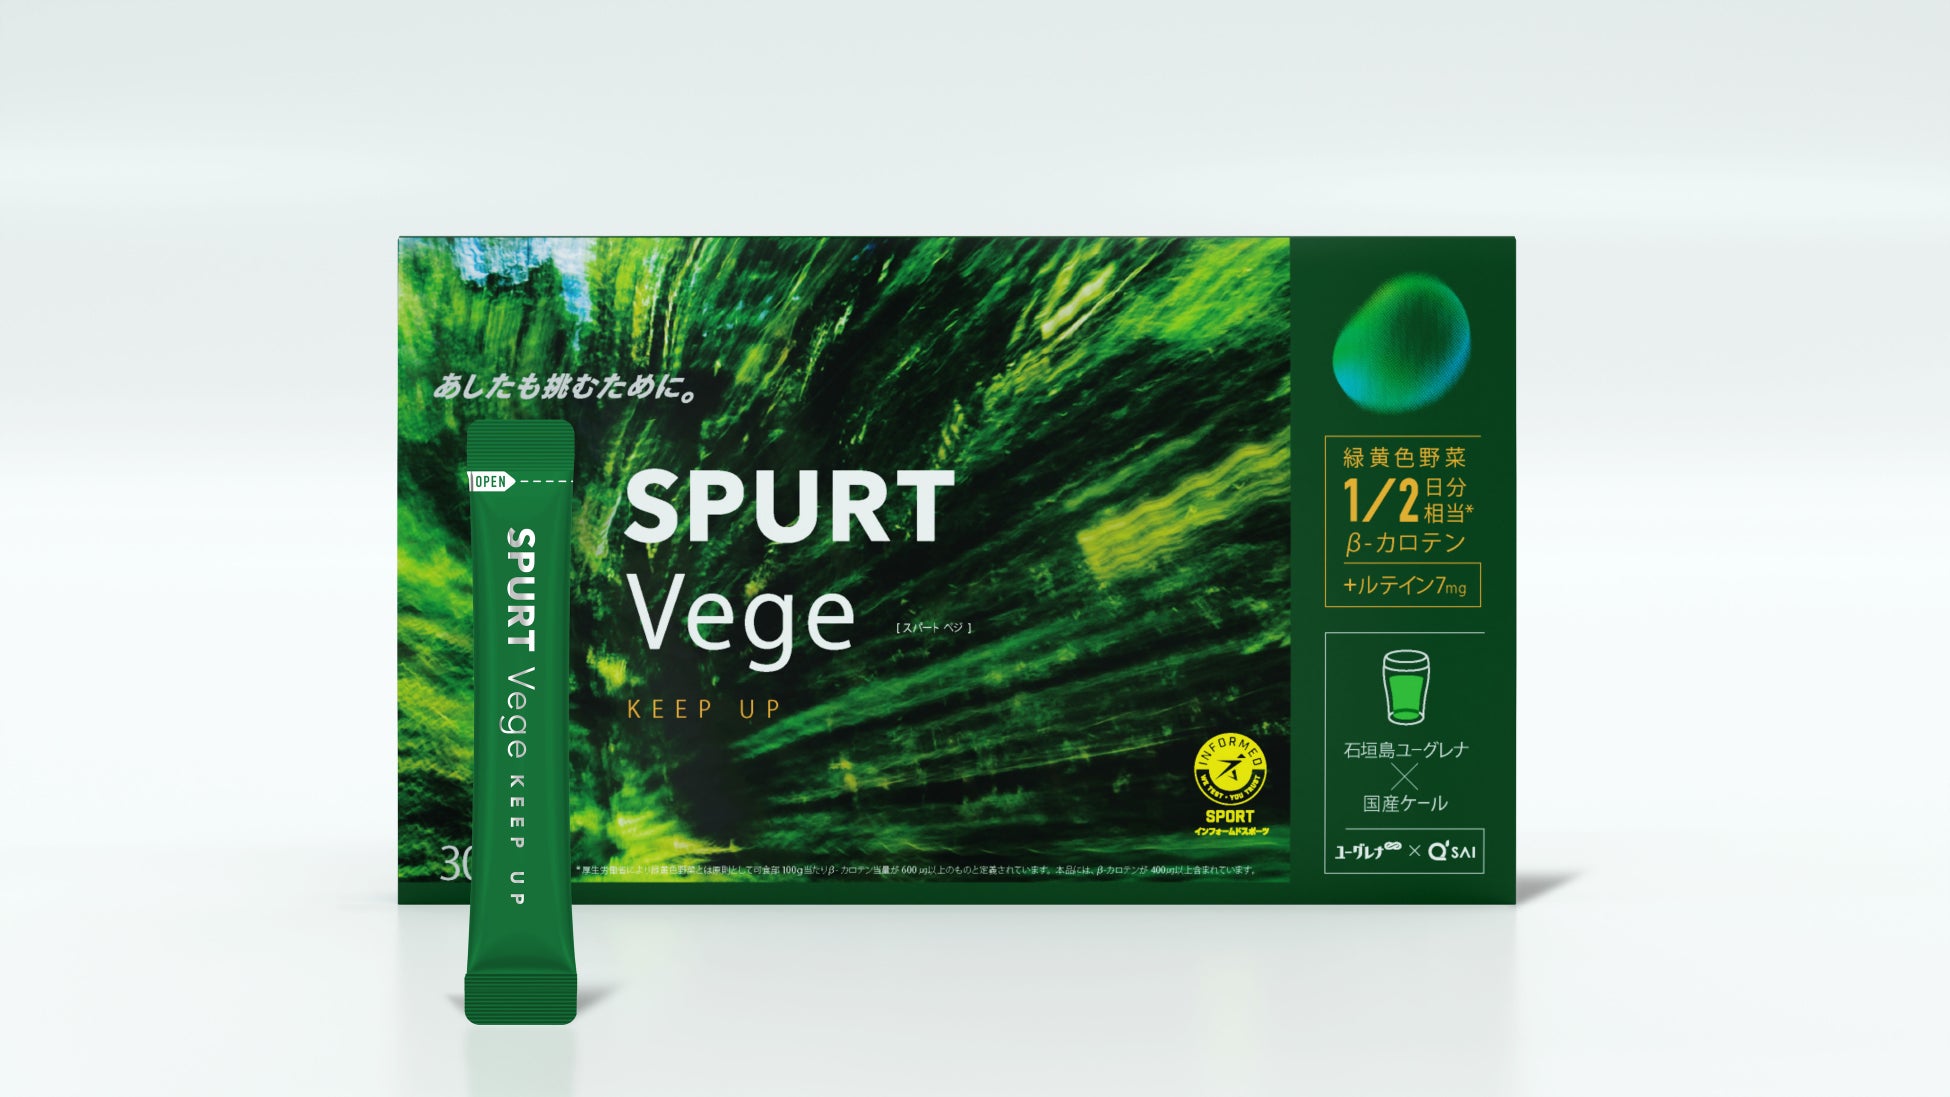 アンチドーピング認証も取得！持続力のあるカラダをサポートし、 不足しがちな緑黄色野菜の栄養素(※1)を補うスポーツ用粉末飲料 「SPURT Vege -KEEP UP-」を、5月13日（月）より新発売